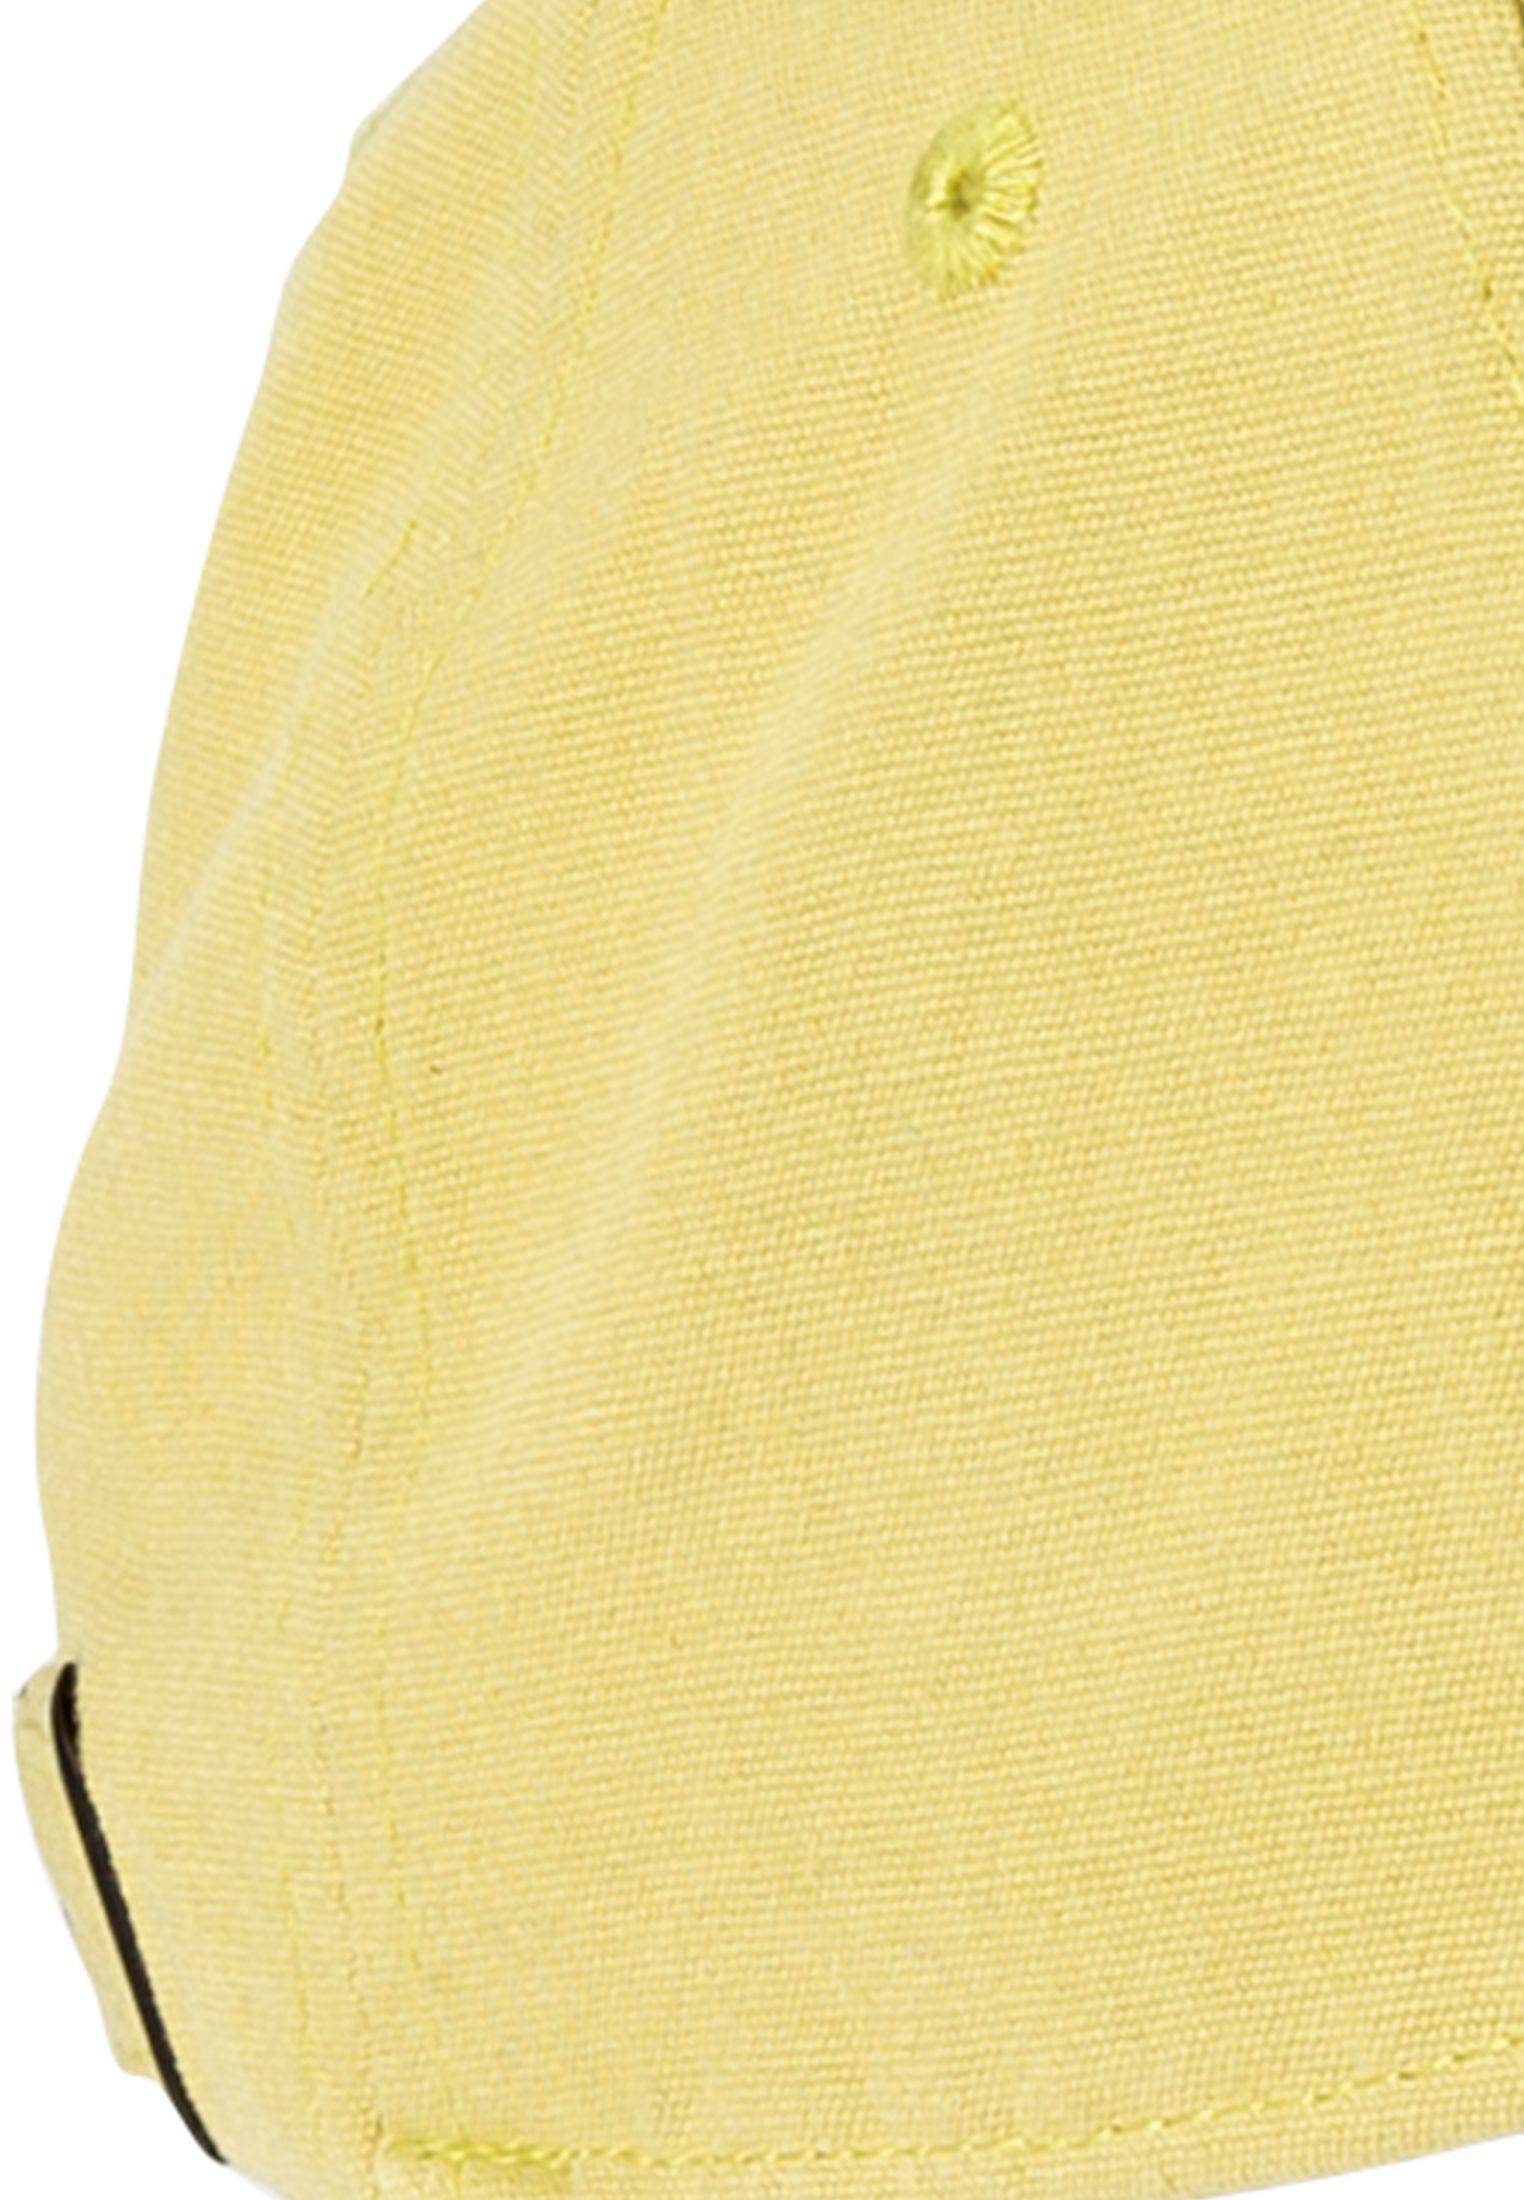 Мужская кепка Camel Active (Baseball cap 4062305C23), оливковая, цвет оливковый, размер O/S - фото 5